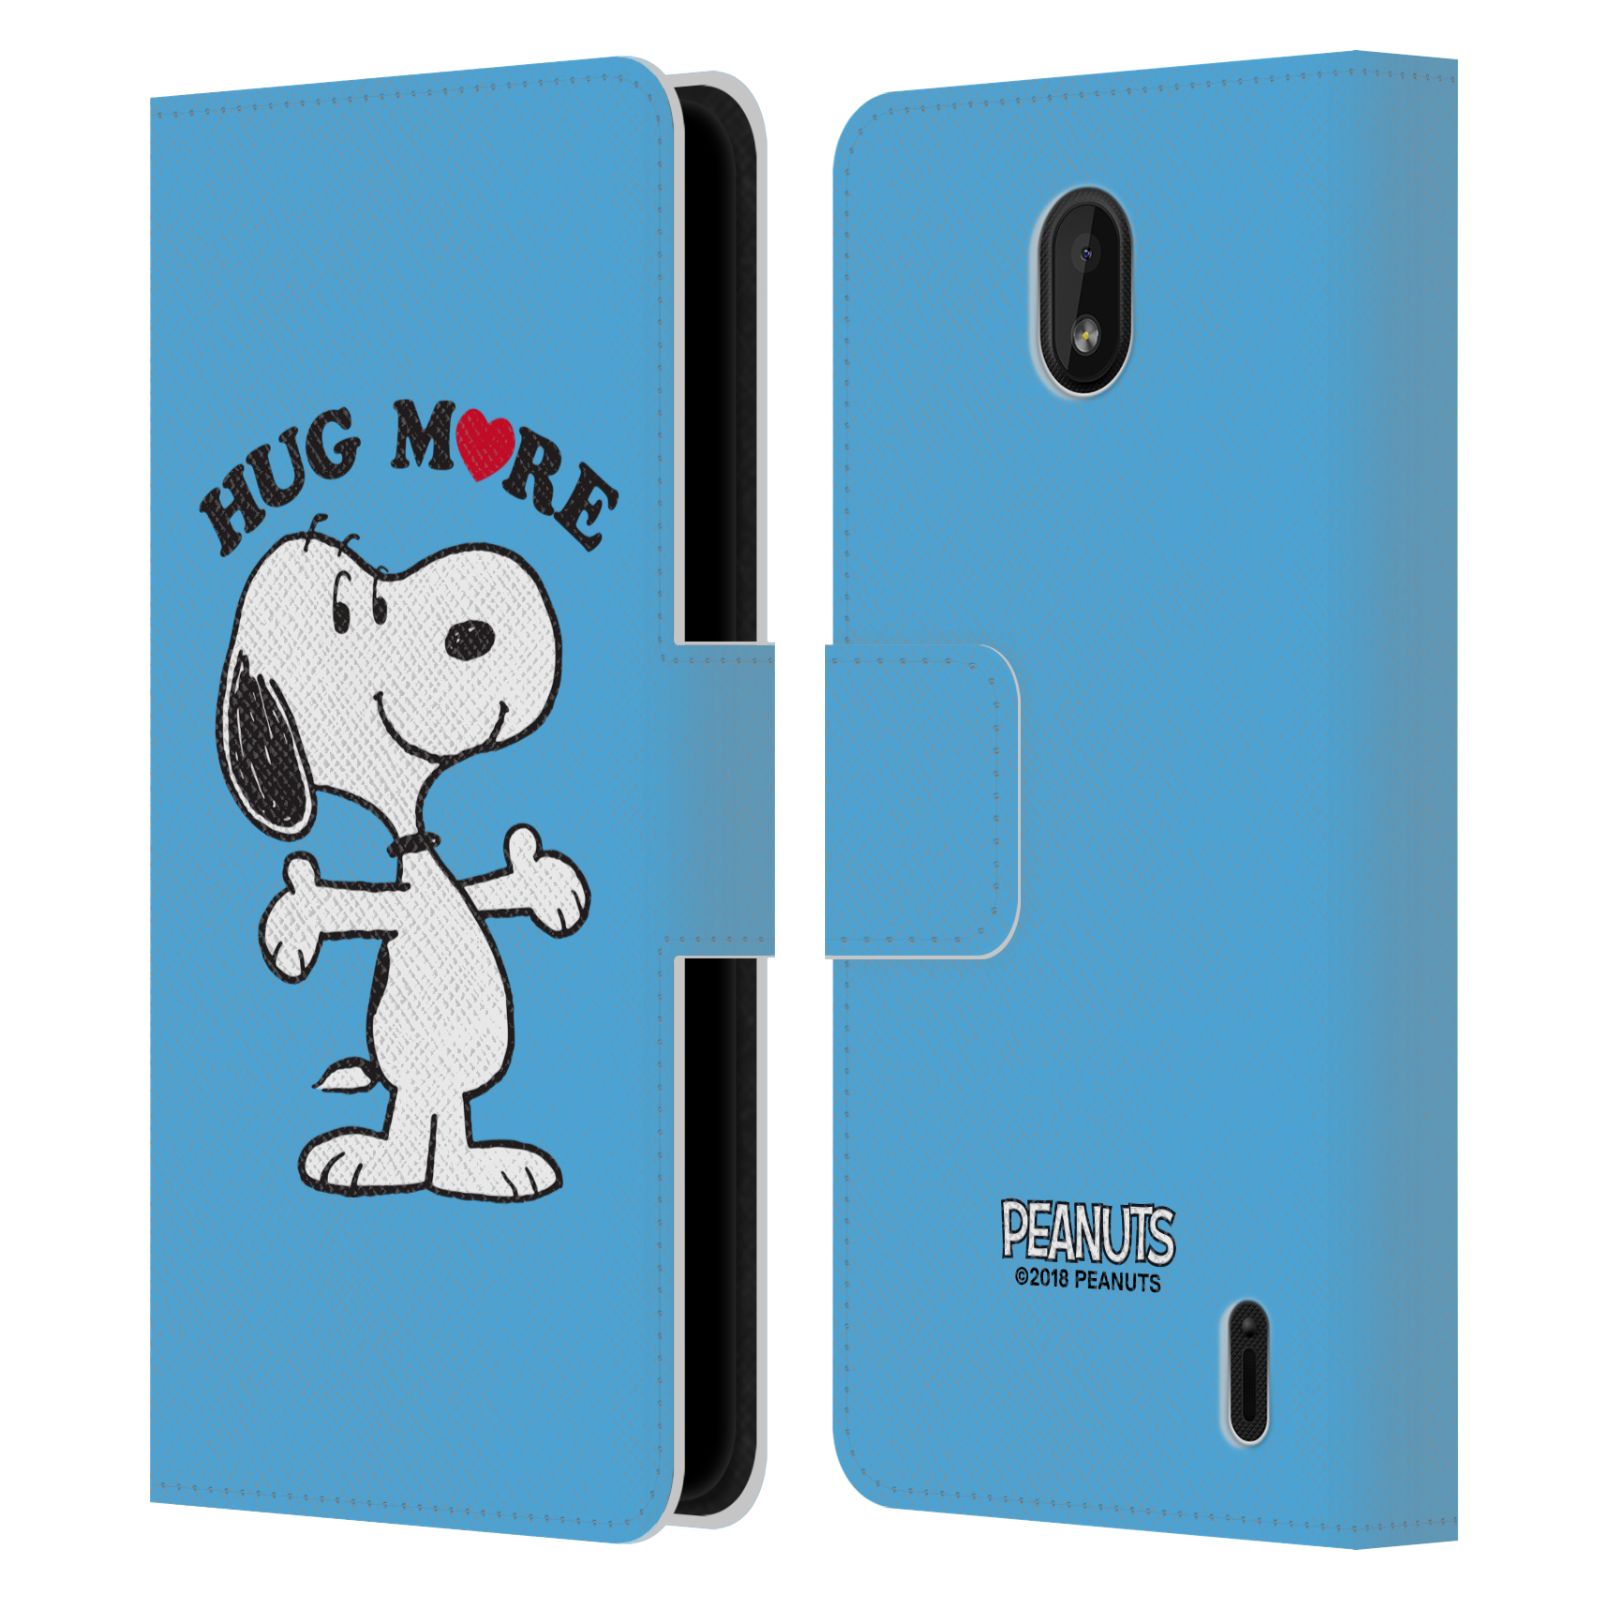 Pouzdro na mobil Nokia 1 PLUS - Head Case - Peanuts - pejsek snoopy světle modré objetí